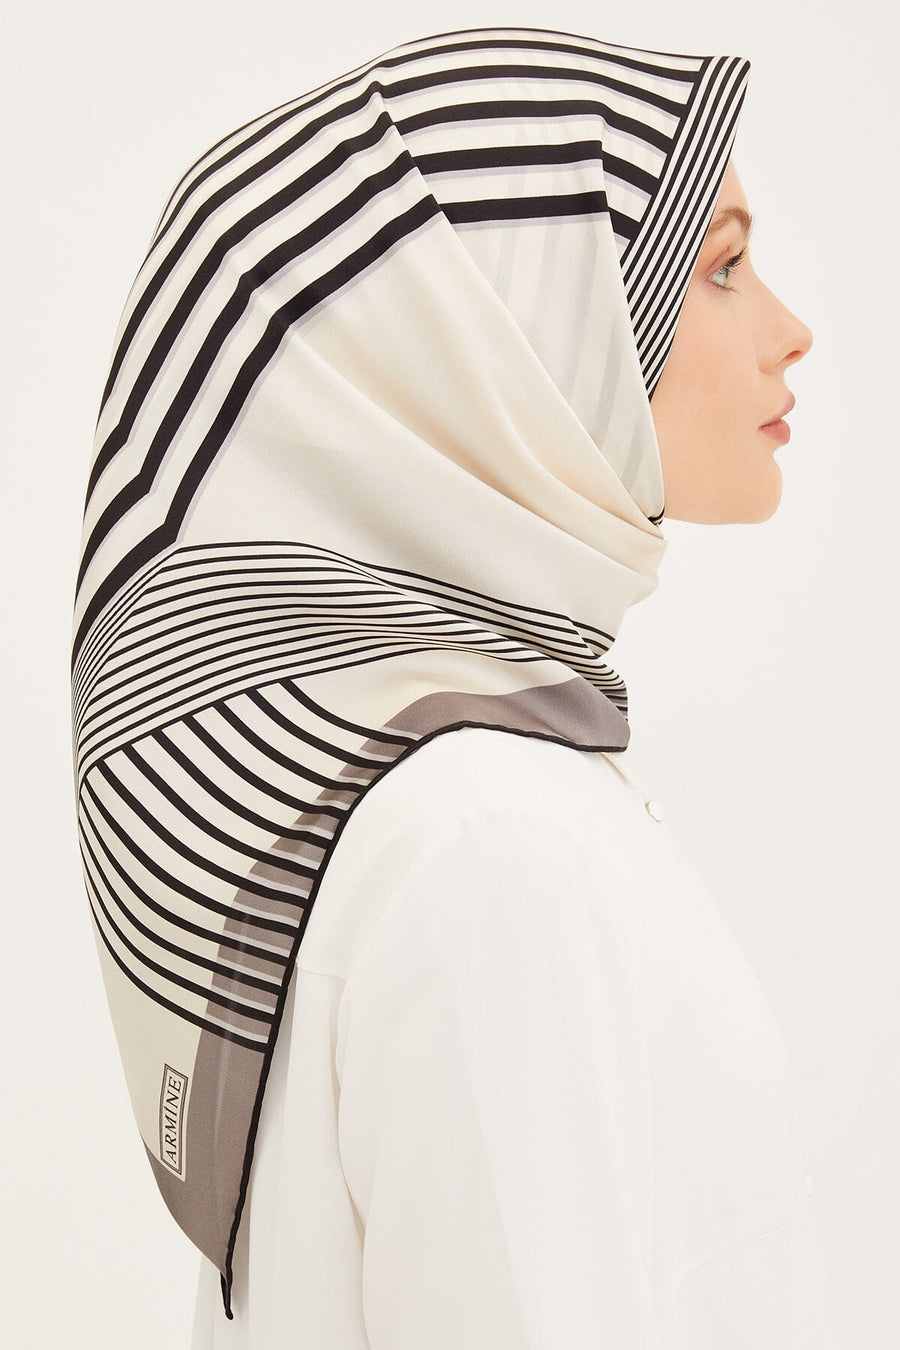 Armine Metro Square Silk Scarf #36 Silk Hijabs,Armine Armine 